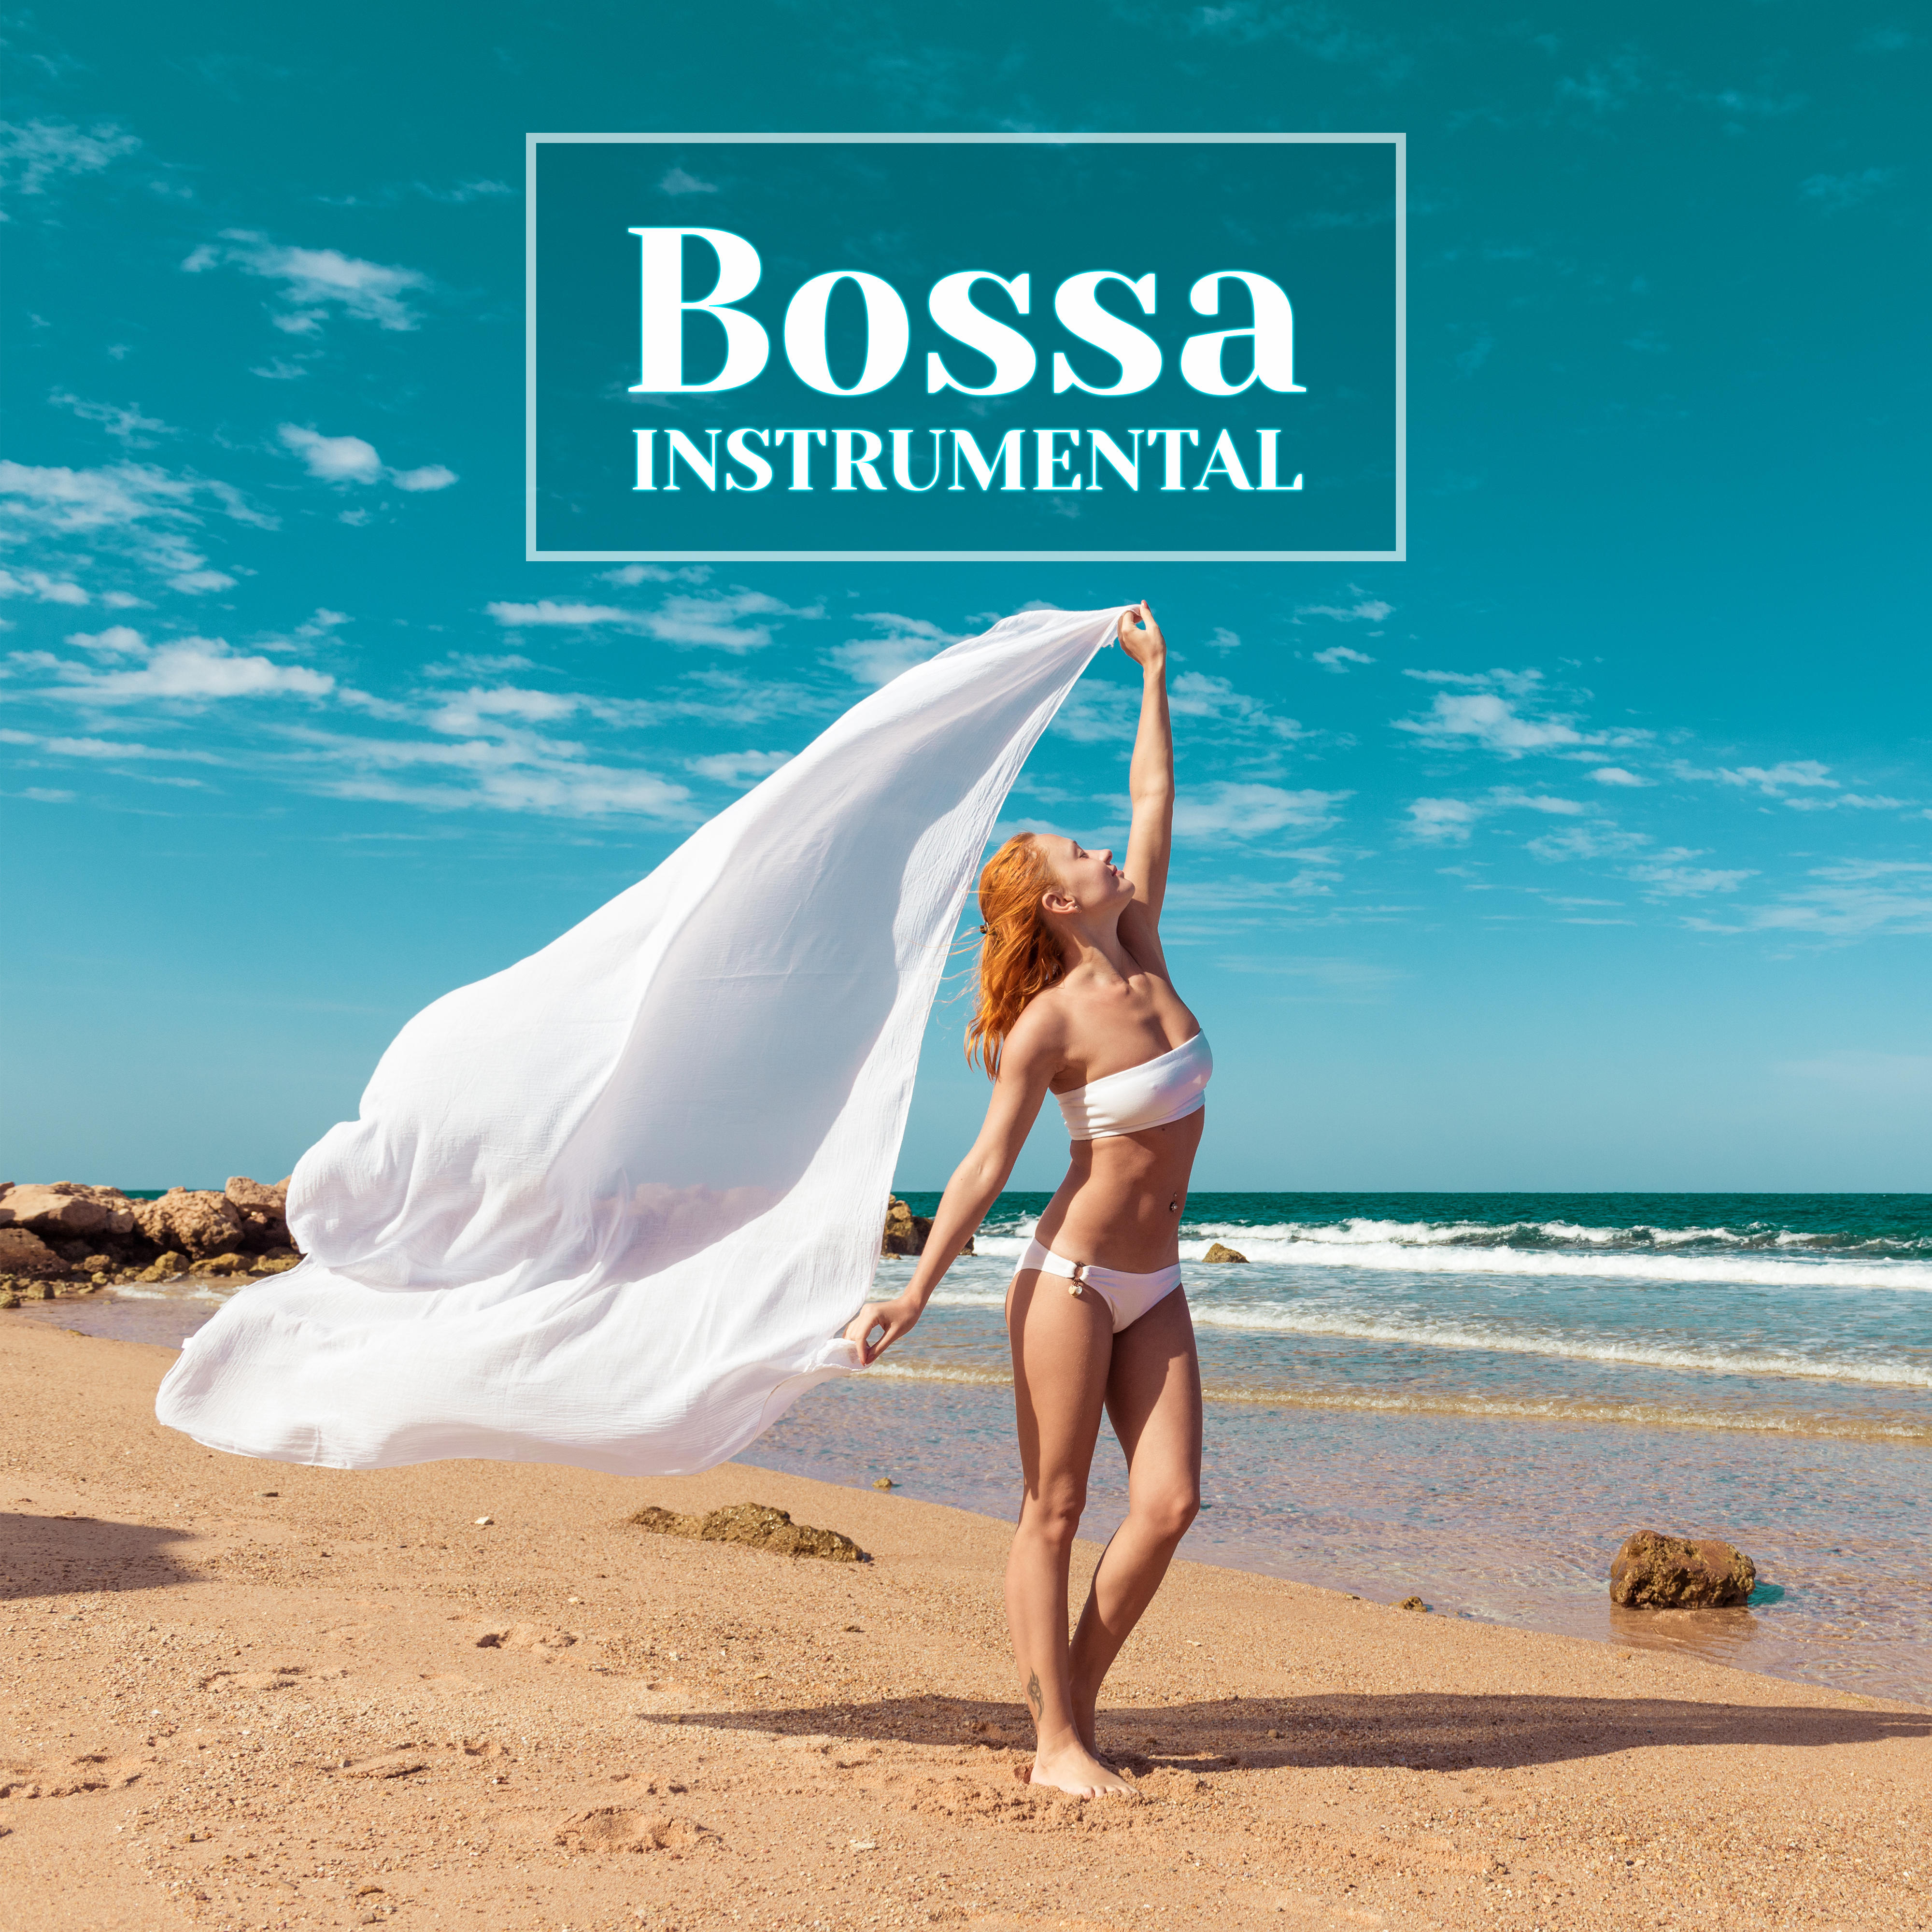 Bossa Instrumental